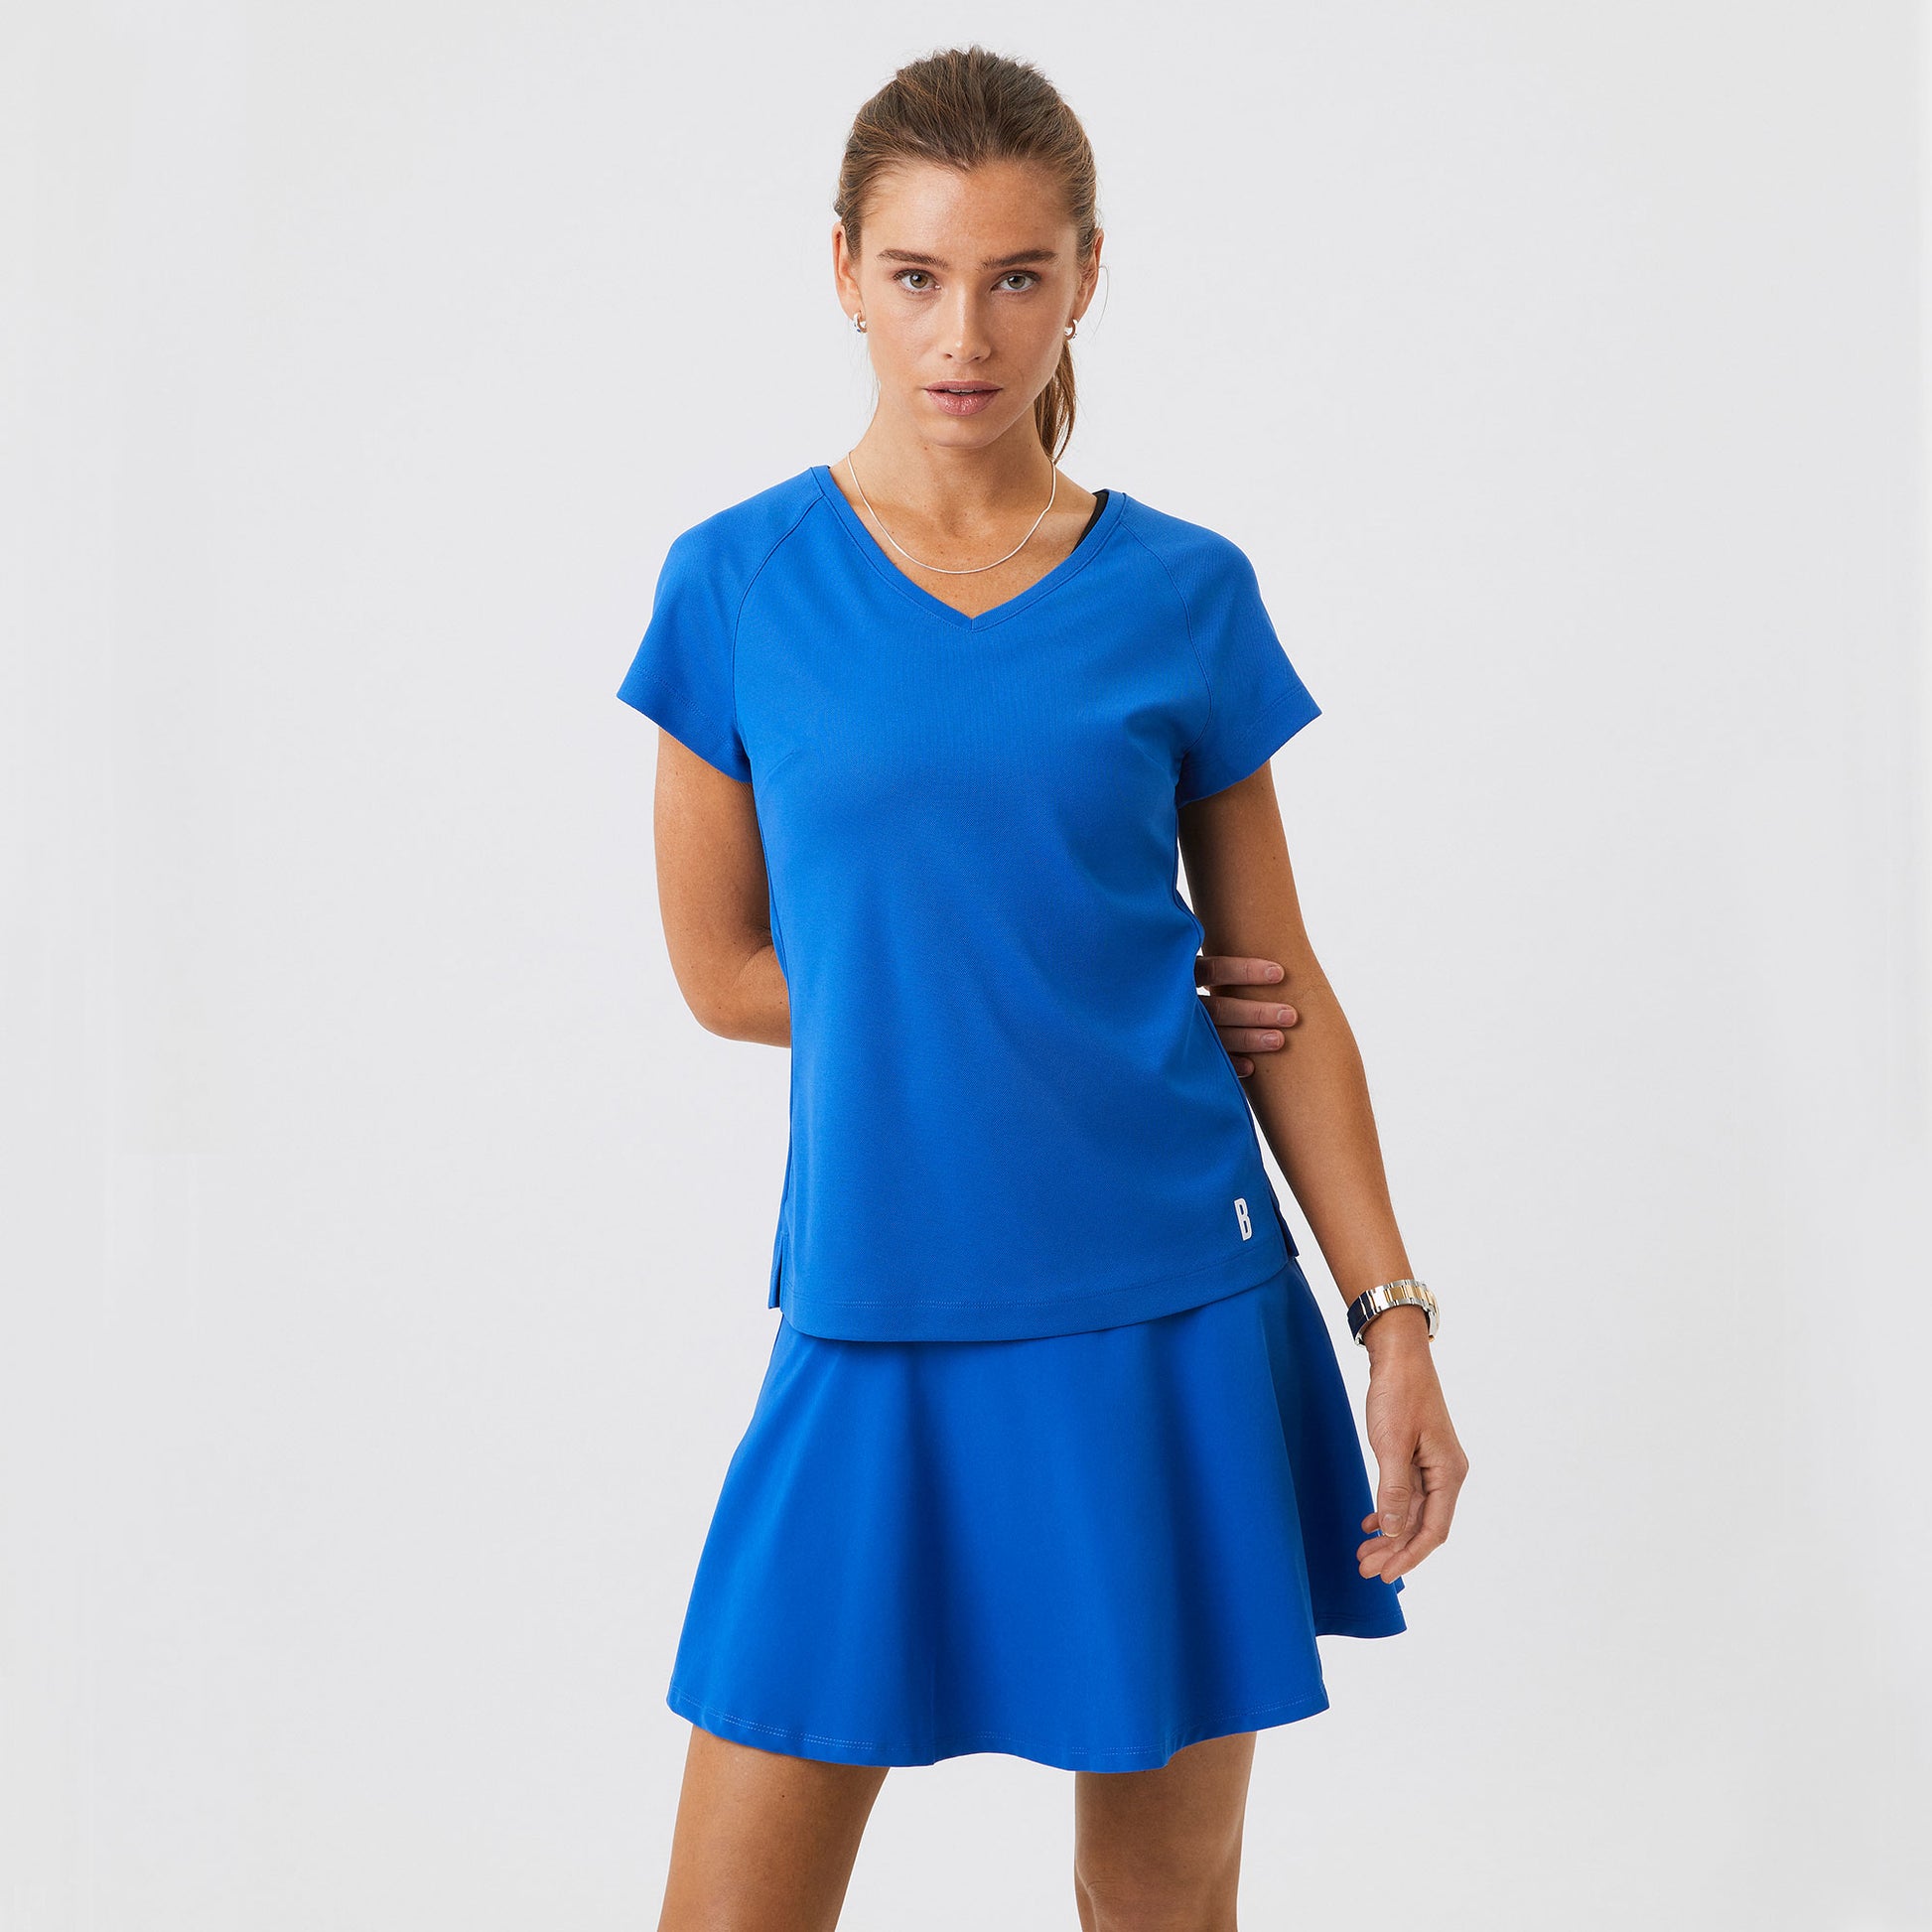 Björn Borg Ace Women's Tennis Shirt Blue (1)